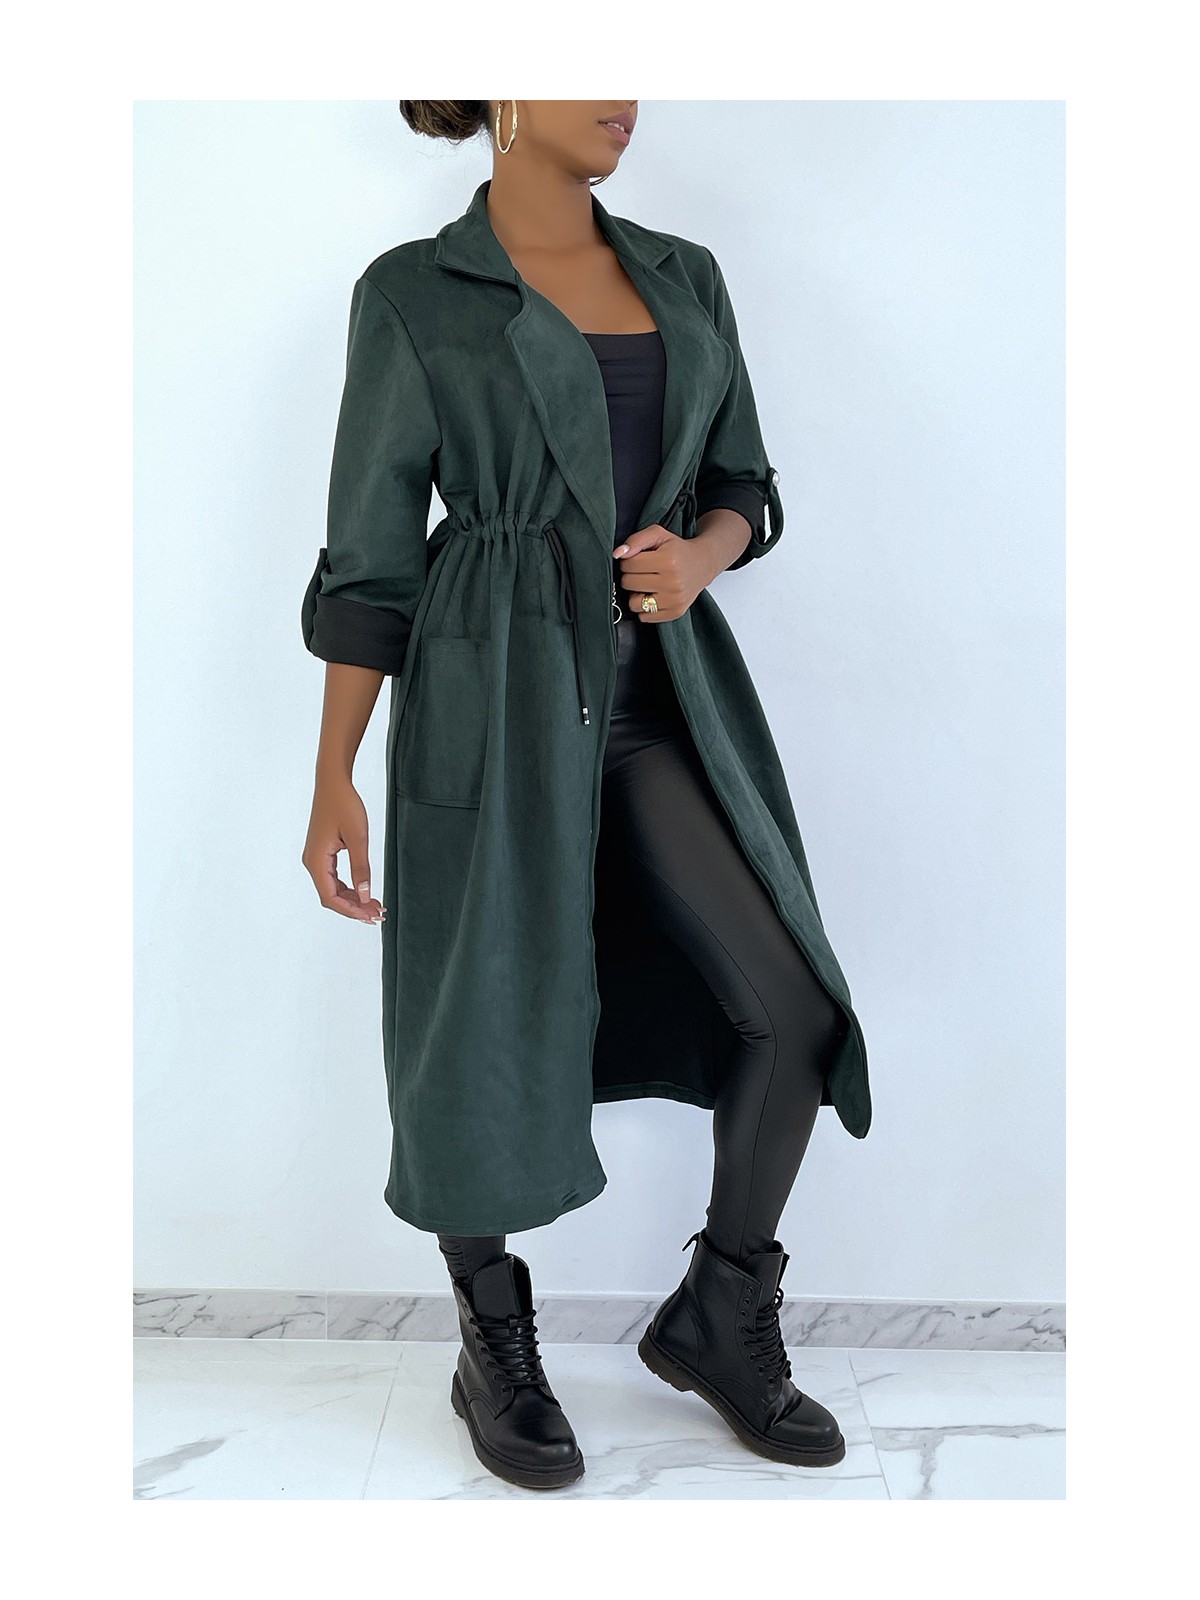 Manteau trench en suédine verte ajustable à la taille - 3